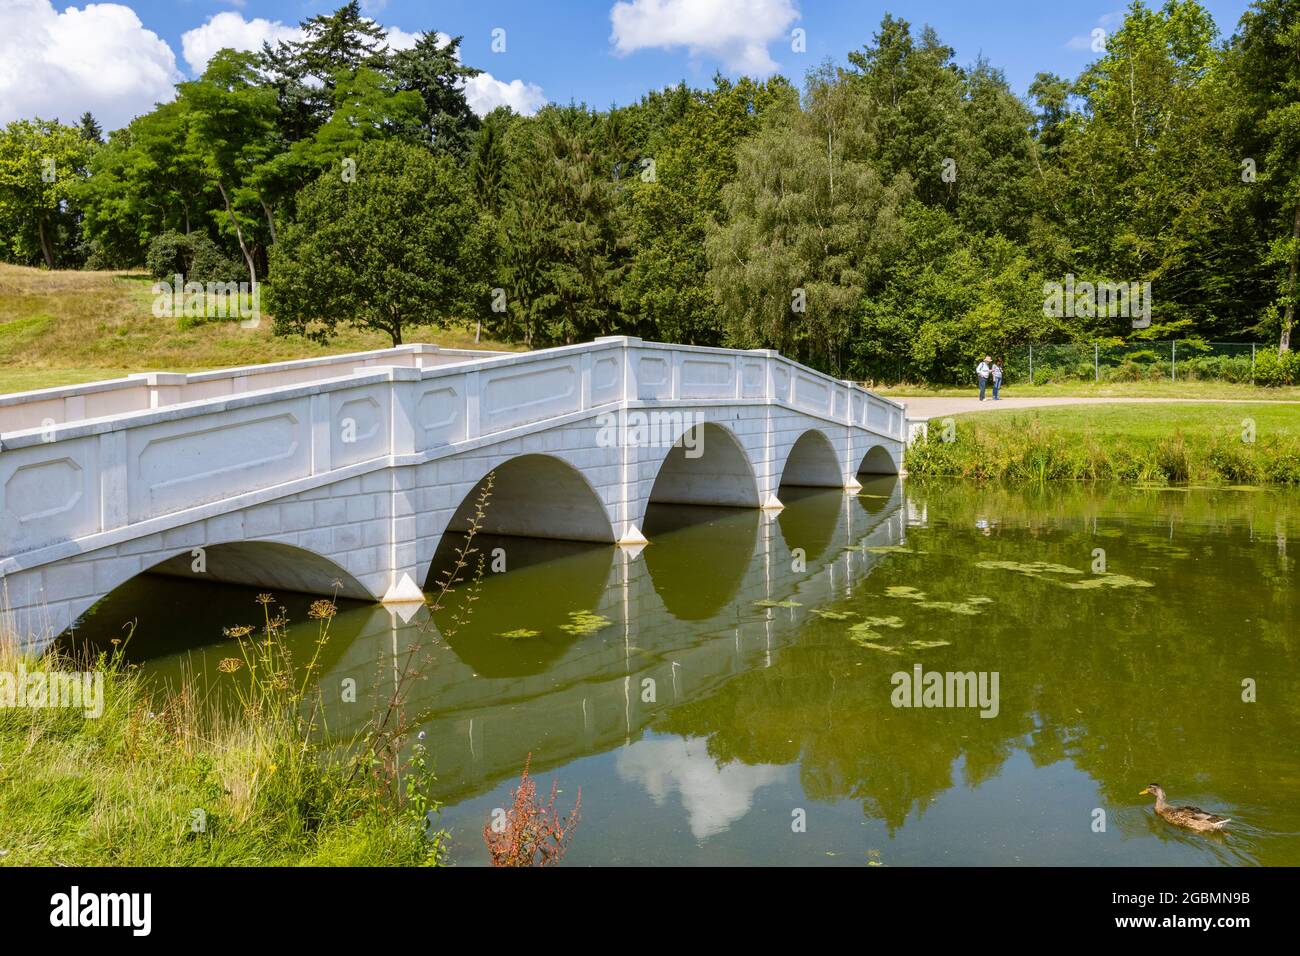 Il Five Arch Bridge nel Parco dei Paesaggi di Hamilton, giardini paesaggistici a Cobham, Surrey, Inghilterra sud-orientale, Regno Unito Foto Stock